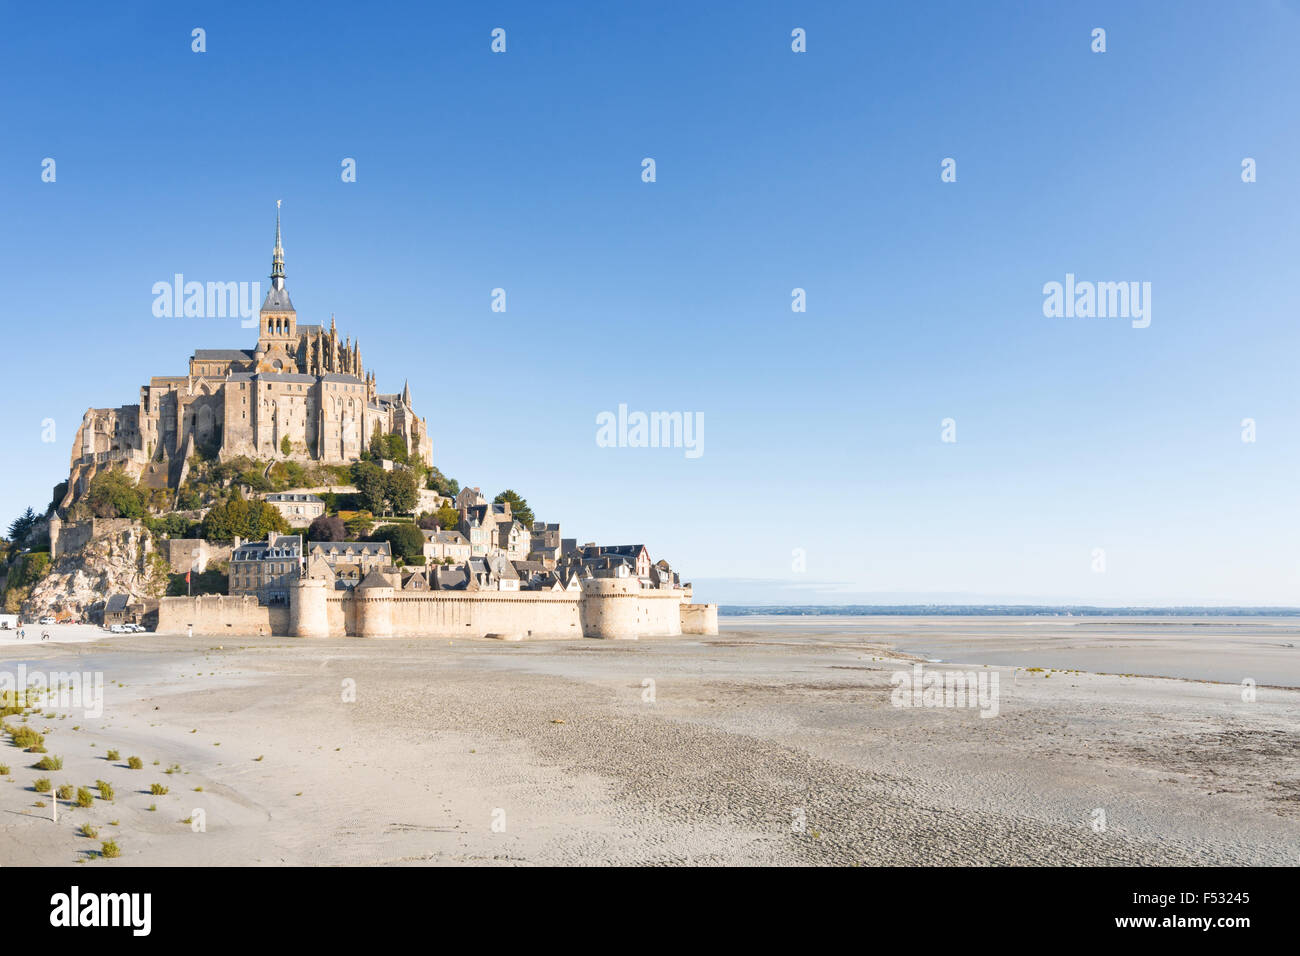 Le Mont Saint Michel, France, Normandy 2015 Stock Photo